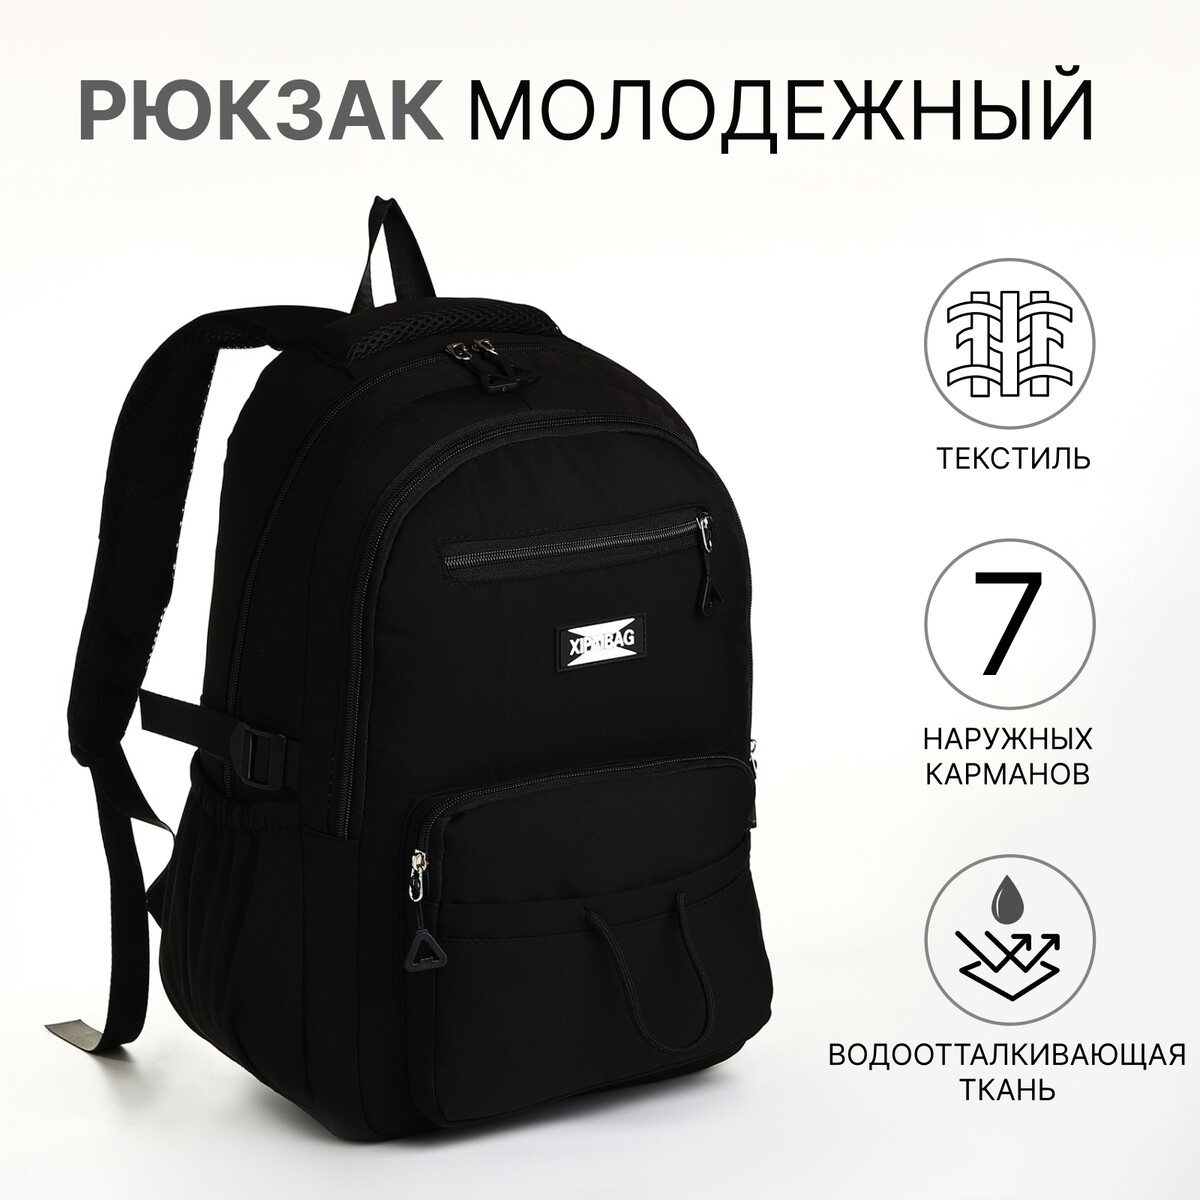 Рюкзак школьный из текстиля на молнии, 7 карманов, цвет черный рюкзак школьный из текстиля на молнии 6 карманов